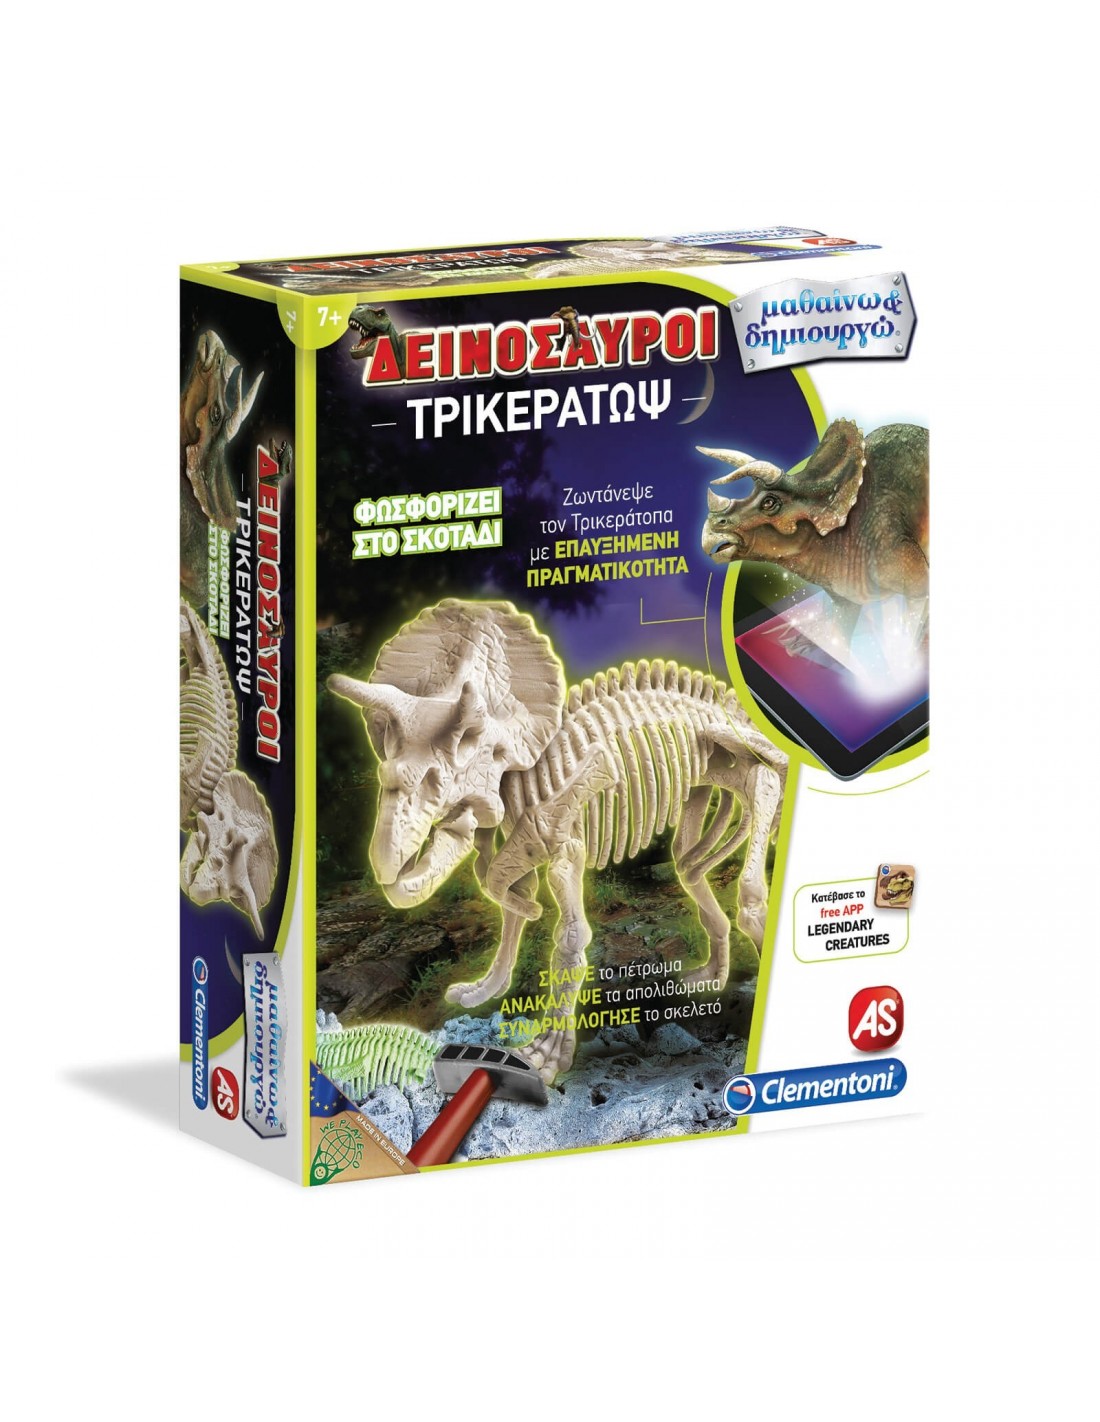 Μαθαίνω Και Δημιουργώ Lab Εκπαιδευτικό Παιχνίδι Δεινόσαυροι Τρικεράτωψ (7+ ετών)